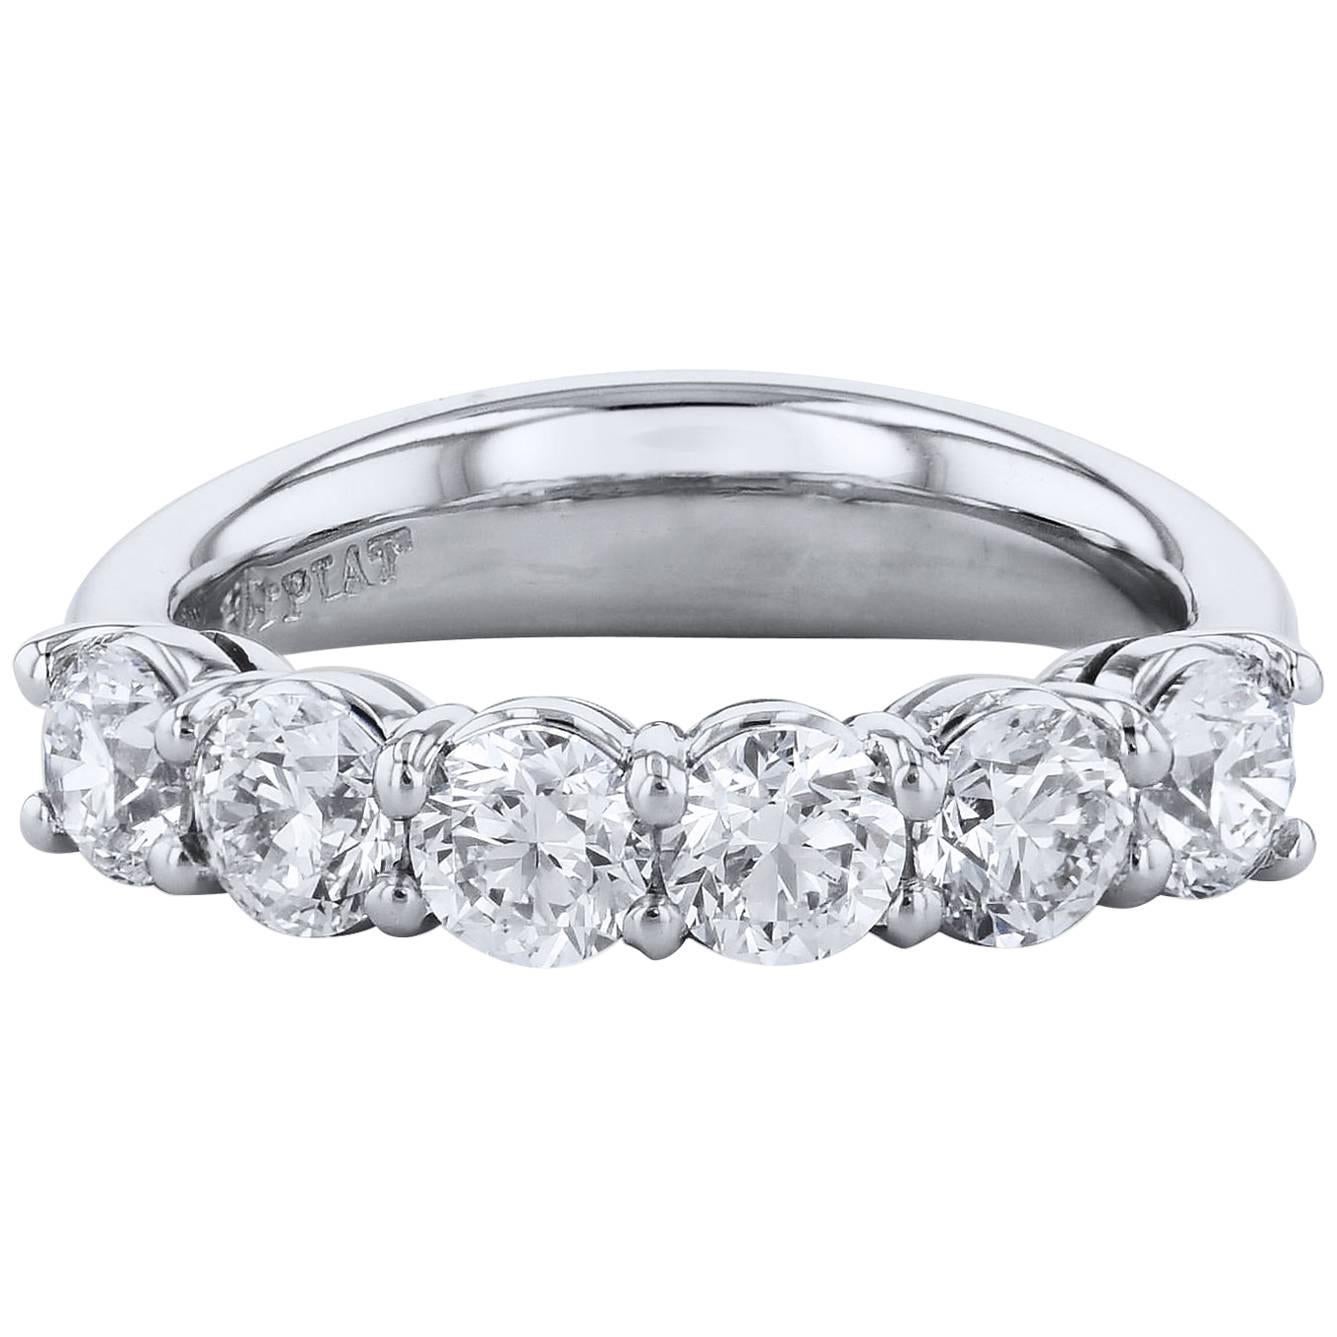 H & H 1.80 Carat Diamond Band Ring